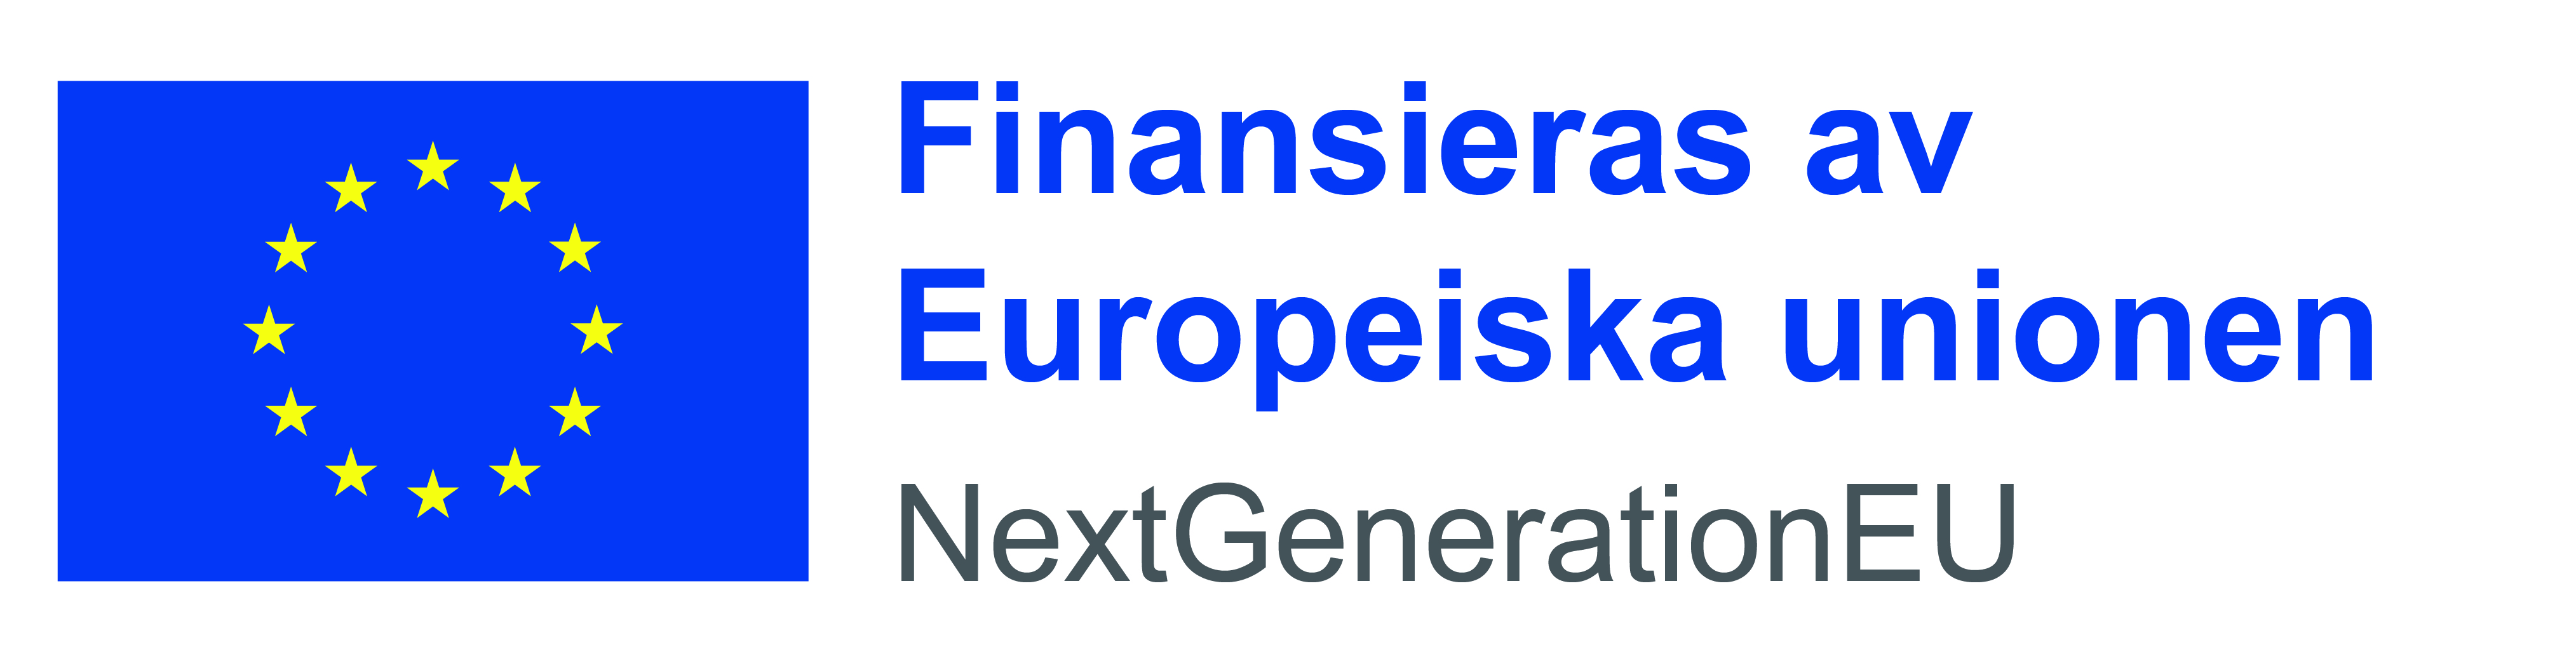 Logo: Finansieras av Europeiska unionen